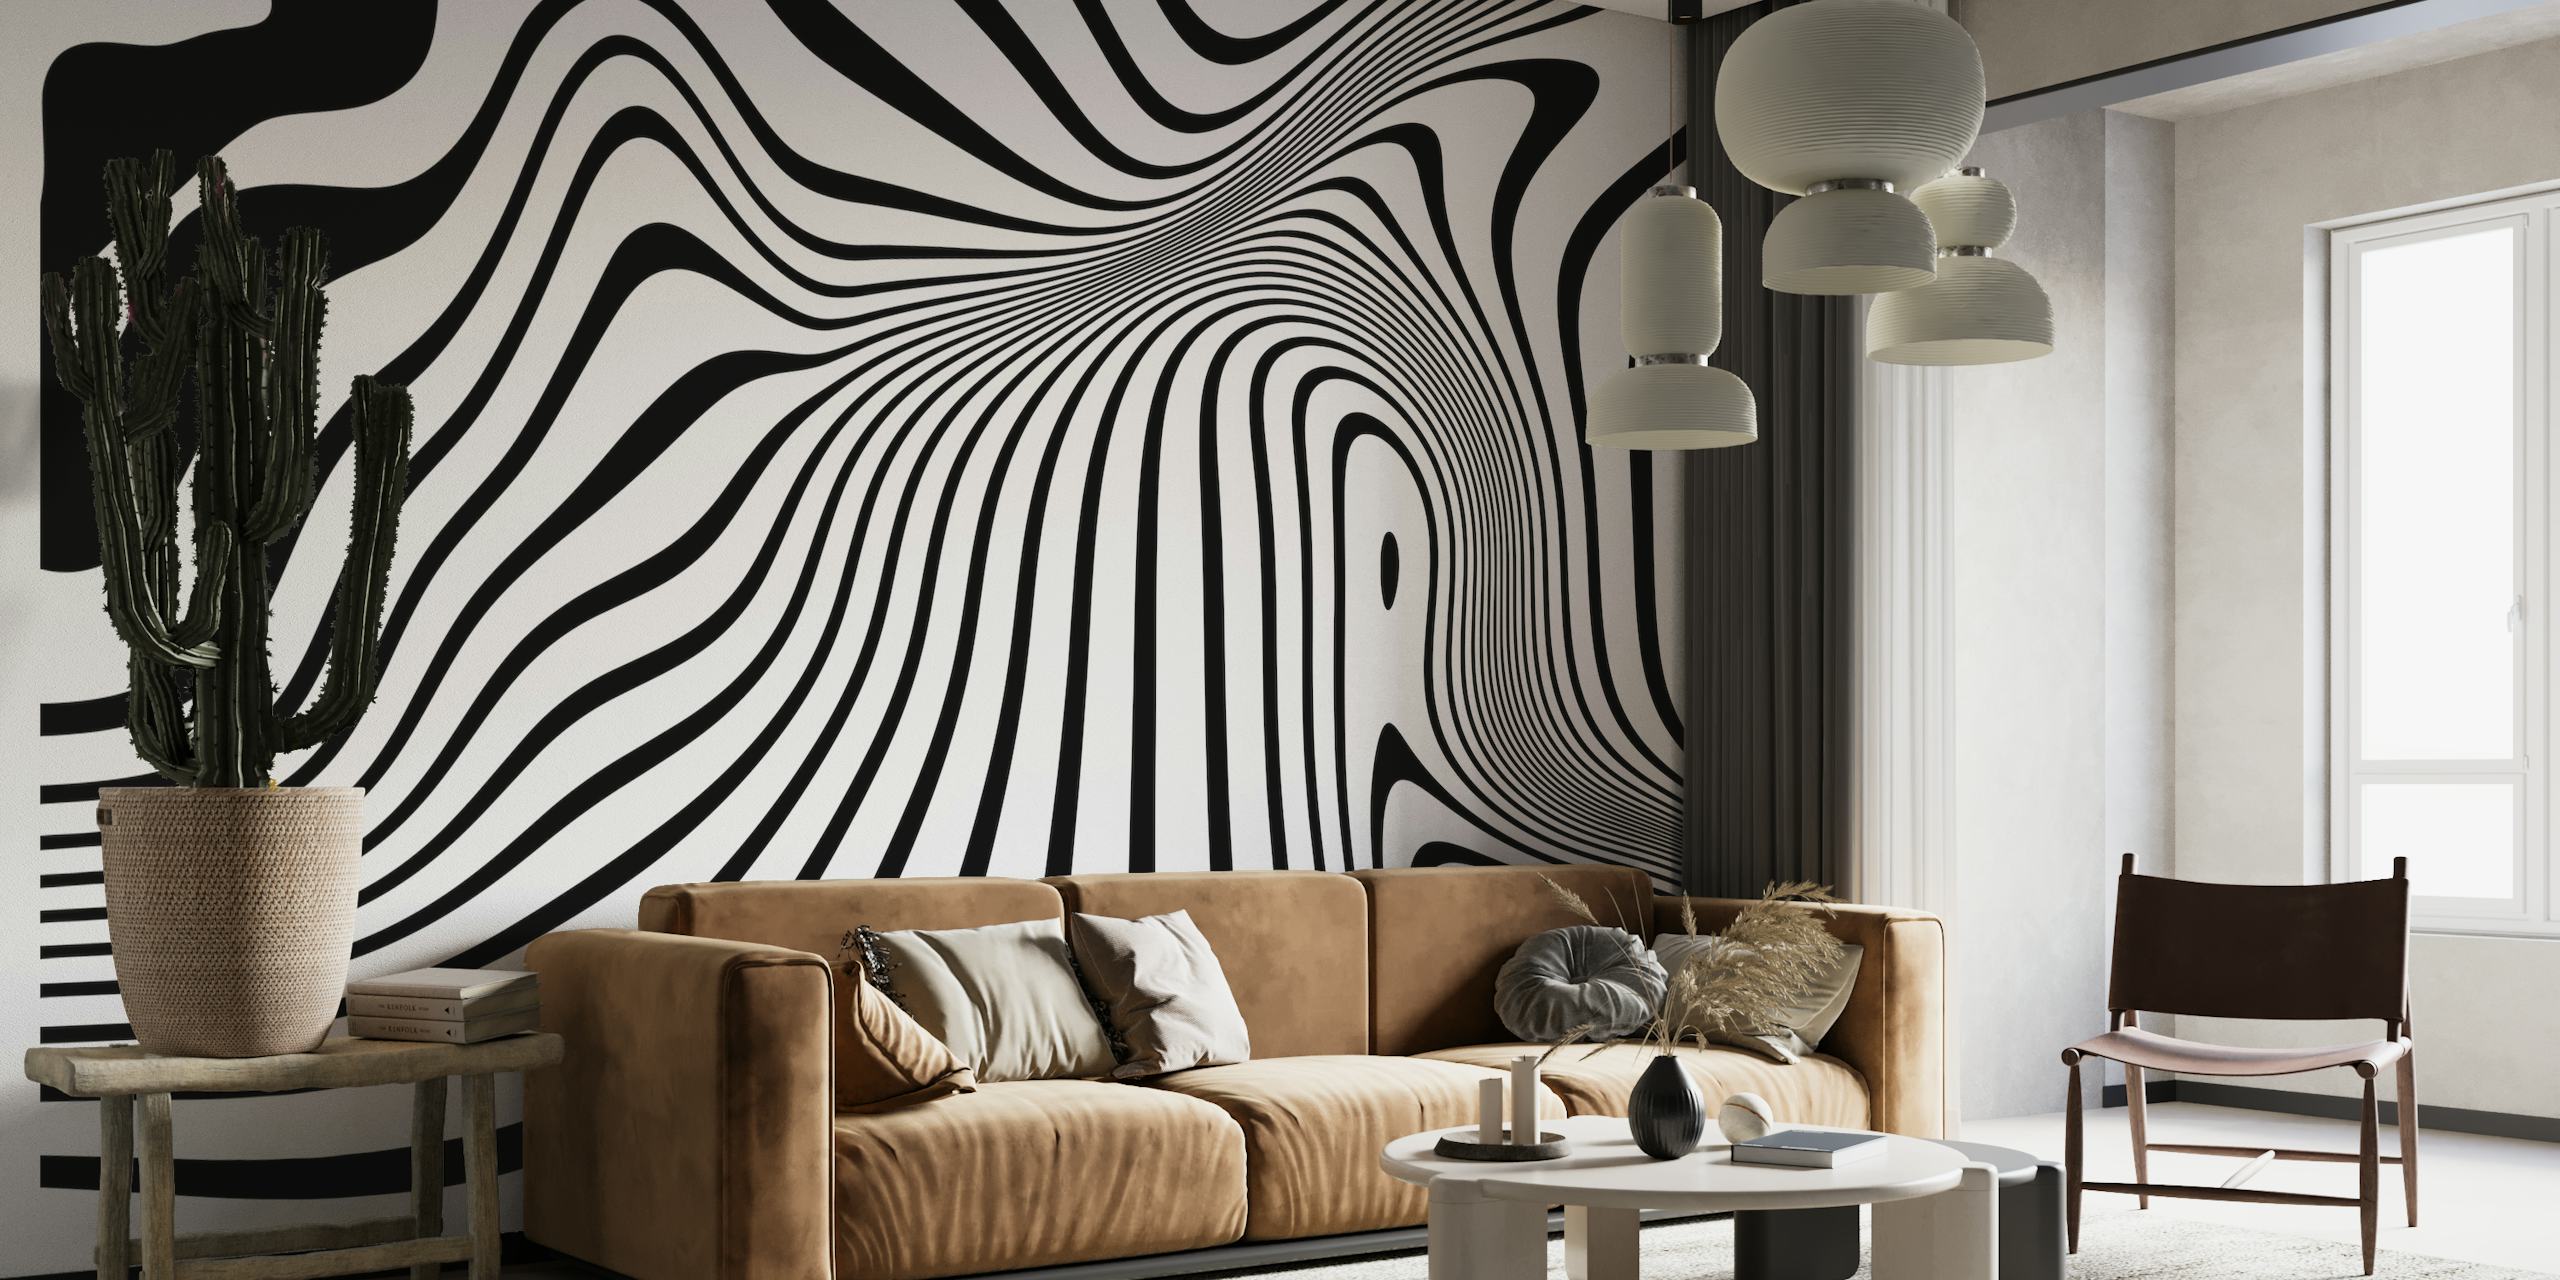 Mural de parede preto e branco de arte abstrata com formas fluidas e orgânicas criando uma textura visual dinâmica